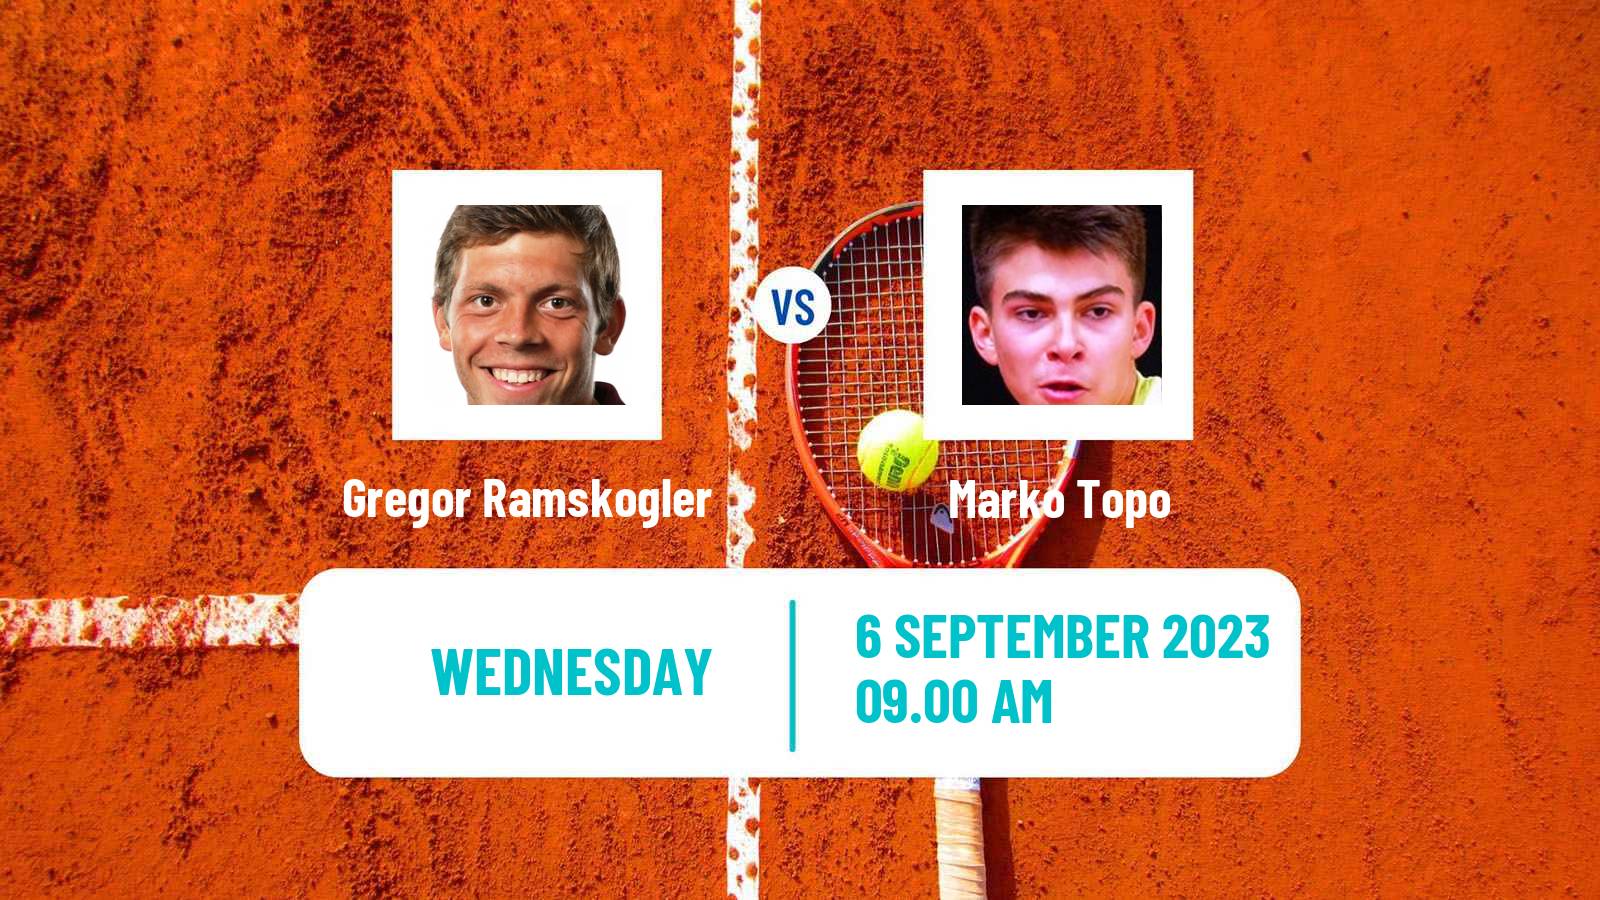 Tennis ITF M25 MarIBOr 2 Men Gregor Ramskogler - Marko Topo